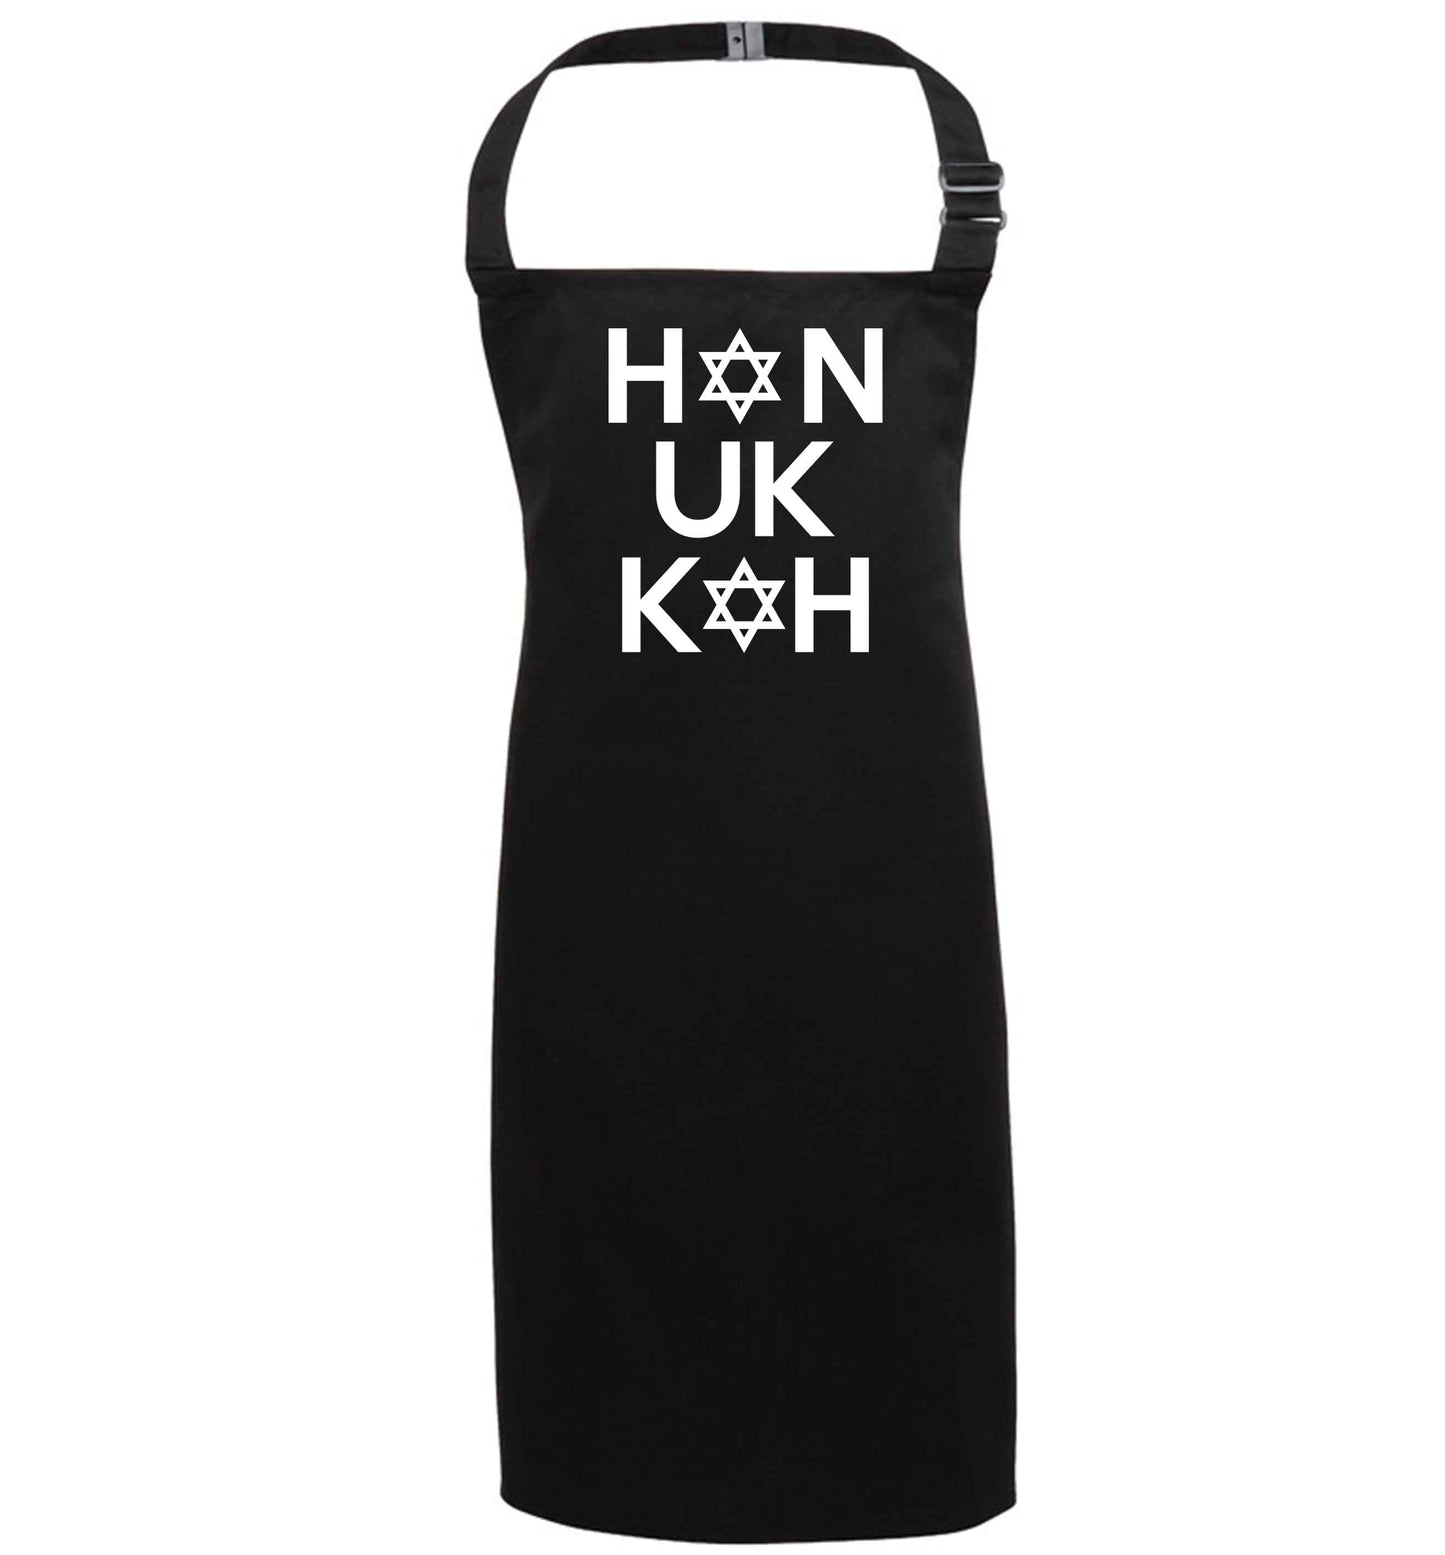 Han uk kah  Hanukkah star of david black apron 7-10 years